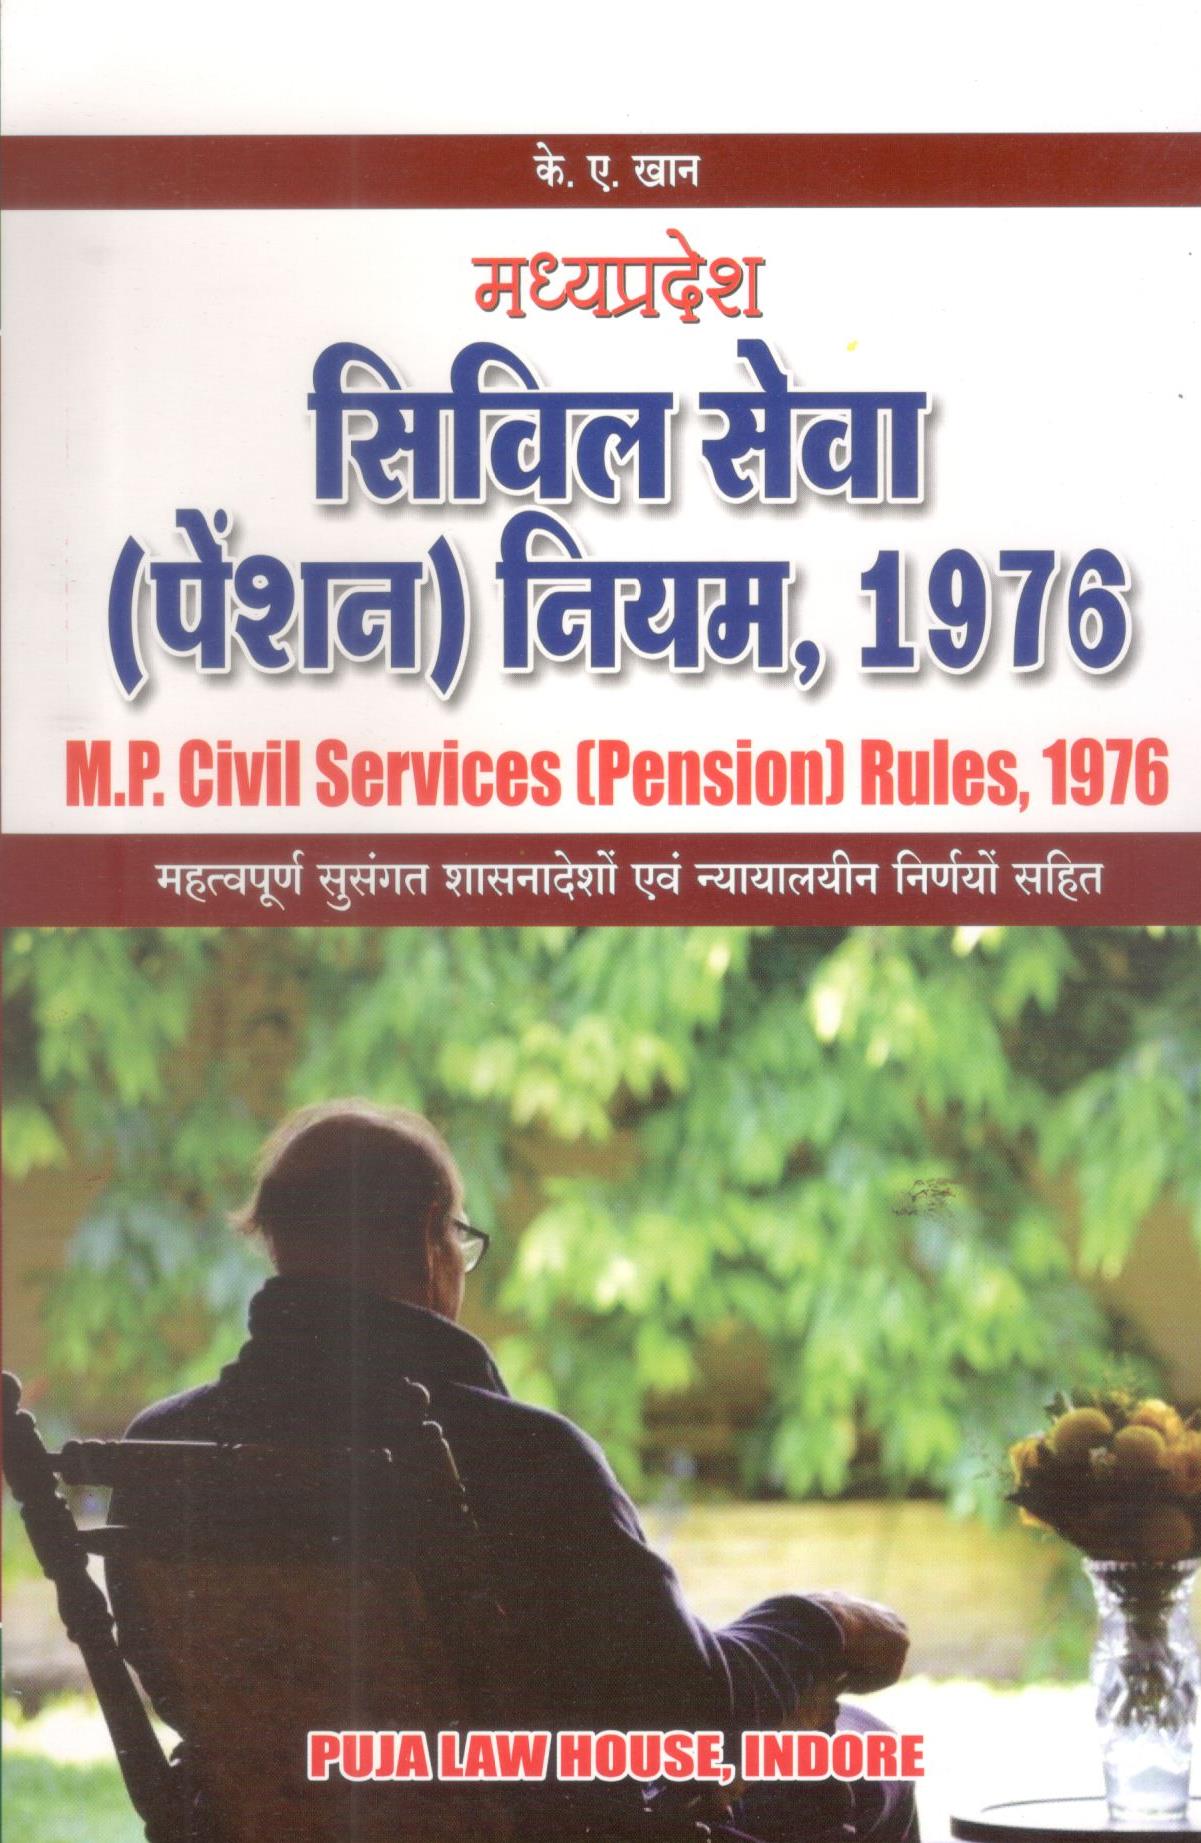  Buy के.ए. खान -  मध्य प्रदेश सिविल सेवा (पेंशन) नियम, 1976 / Madhya Pradesh Civil Services (Pension) Rules, 1976